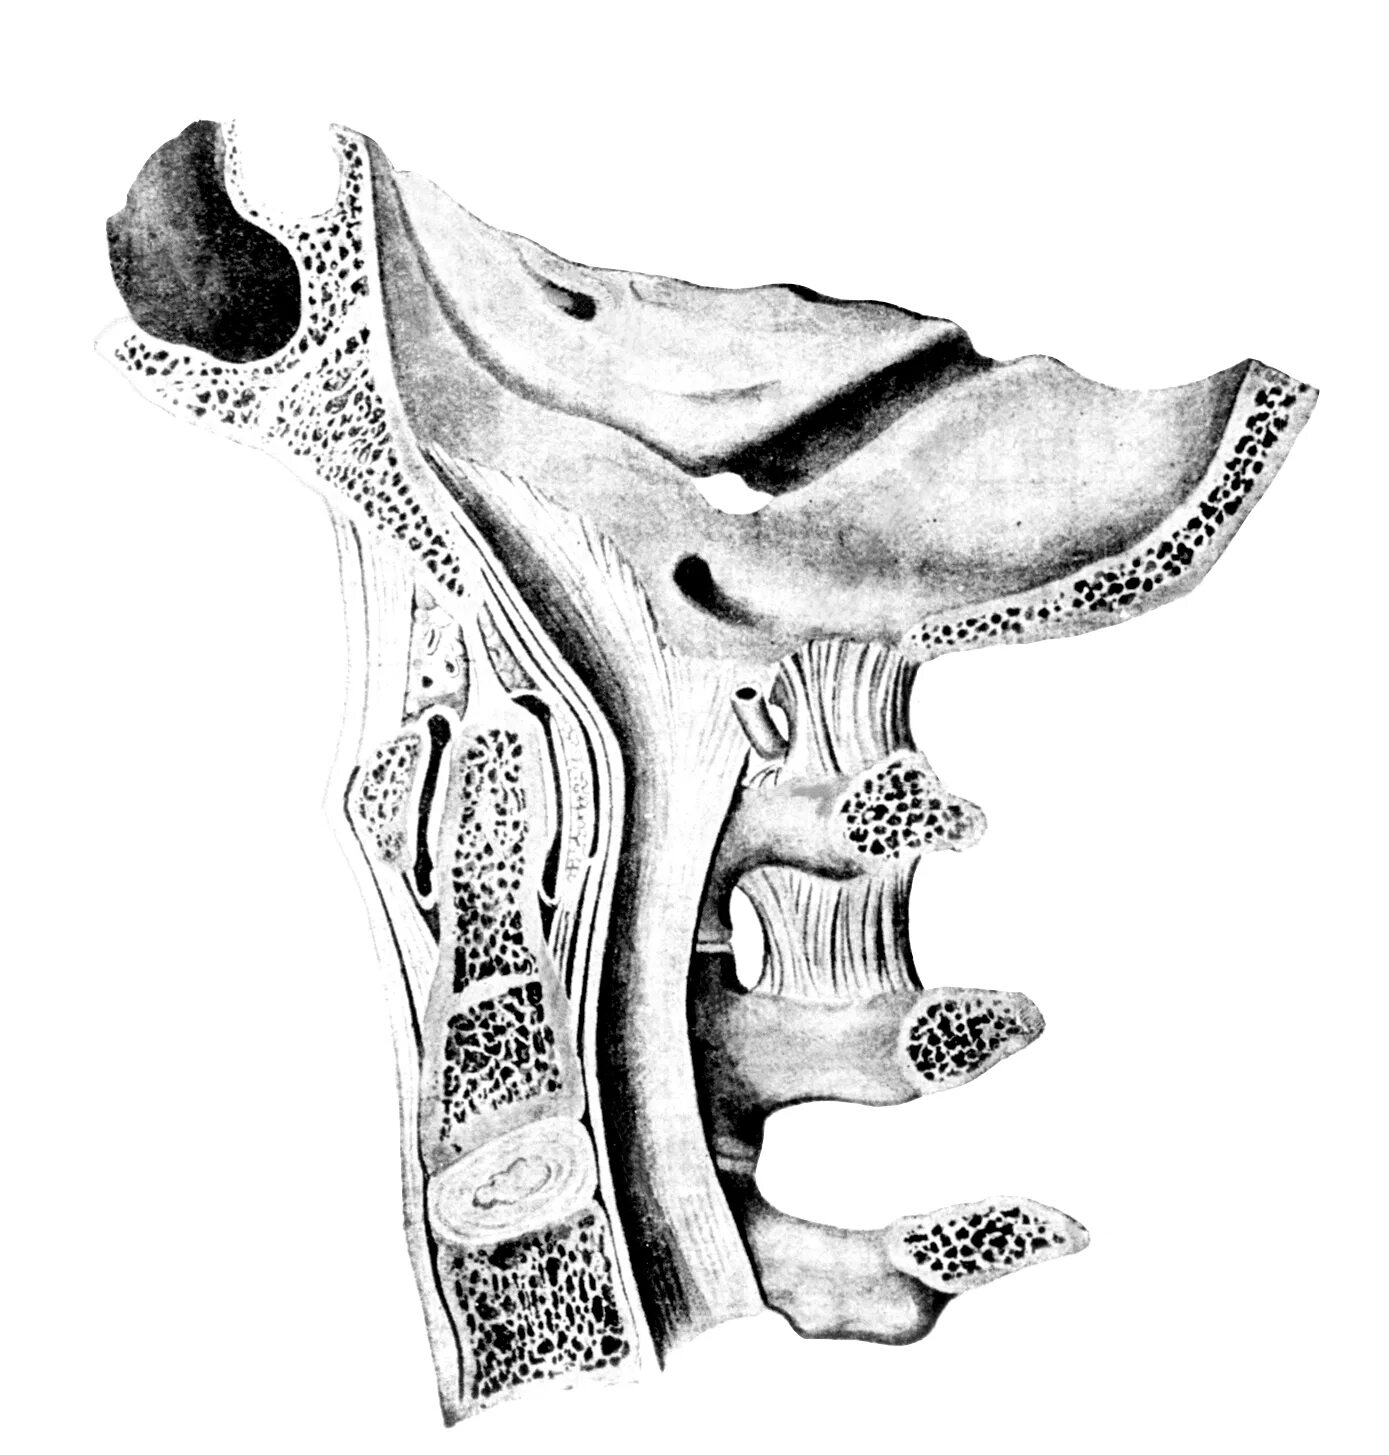 Атланто окципитальный сустав. Анатомия атланто затылочного сустава кт. Атлантозатылочный сустав анатомия. Обызвествление связок в атланто-аксиальном суставе.